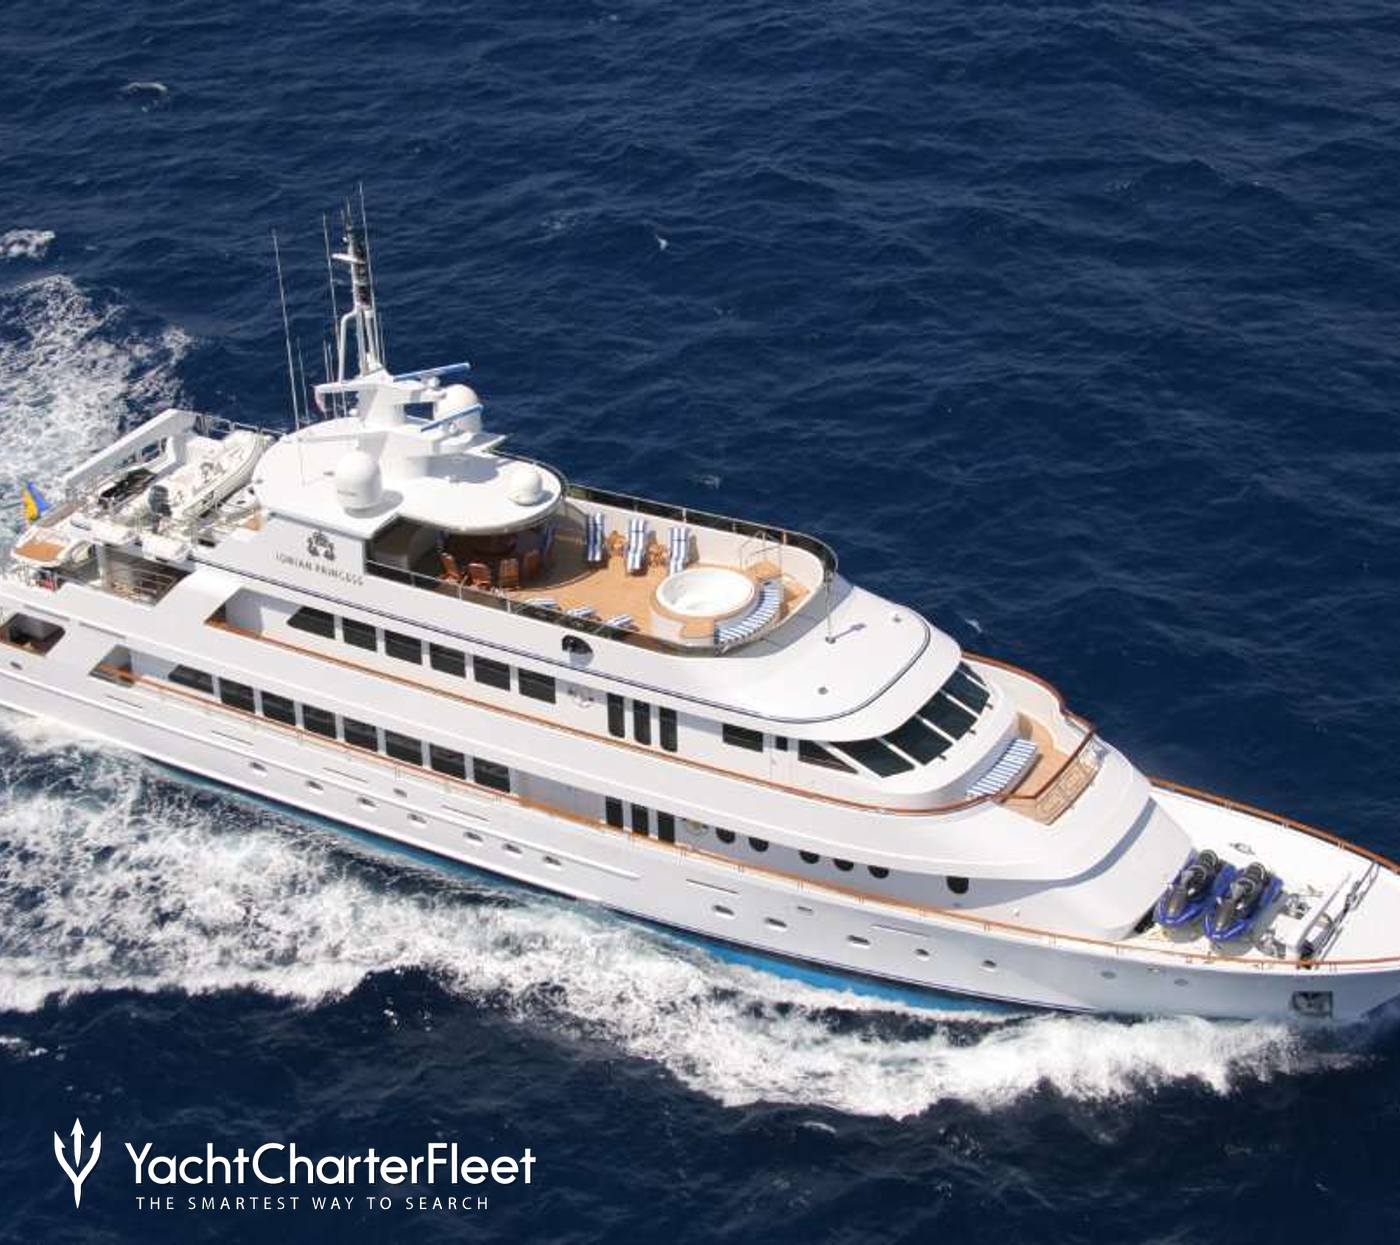 below deck cost of yacht